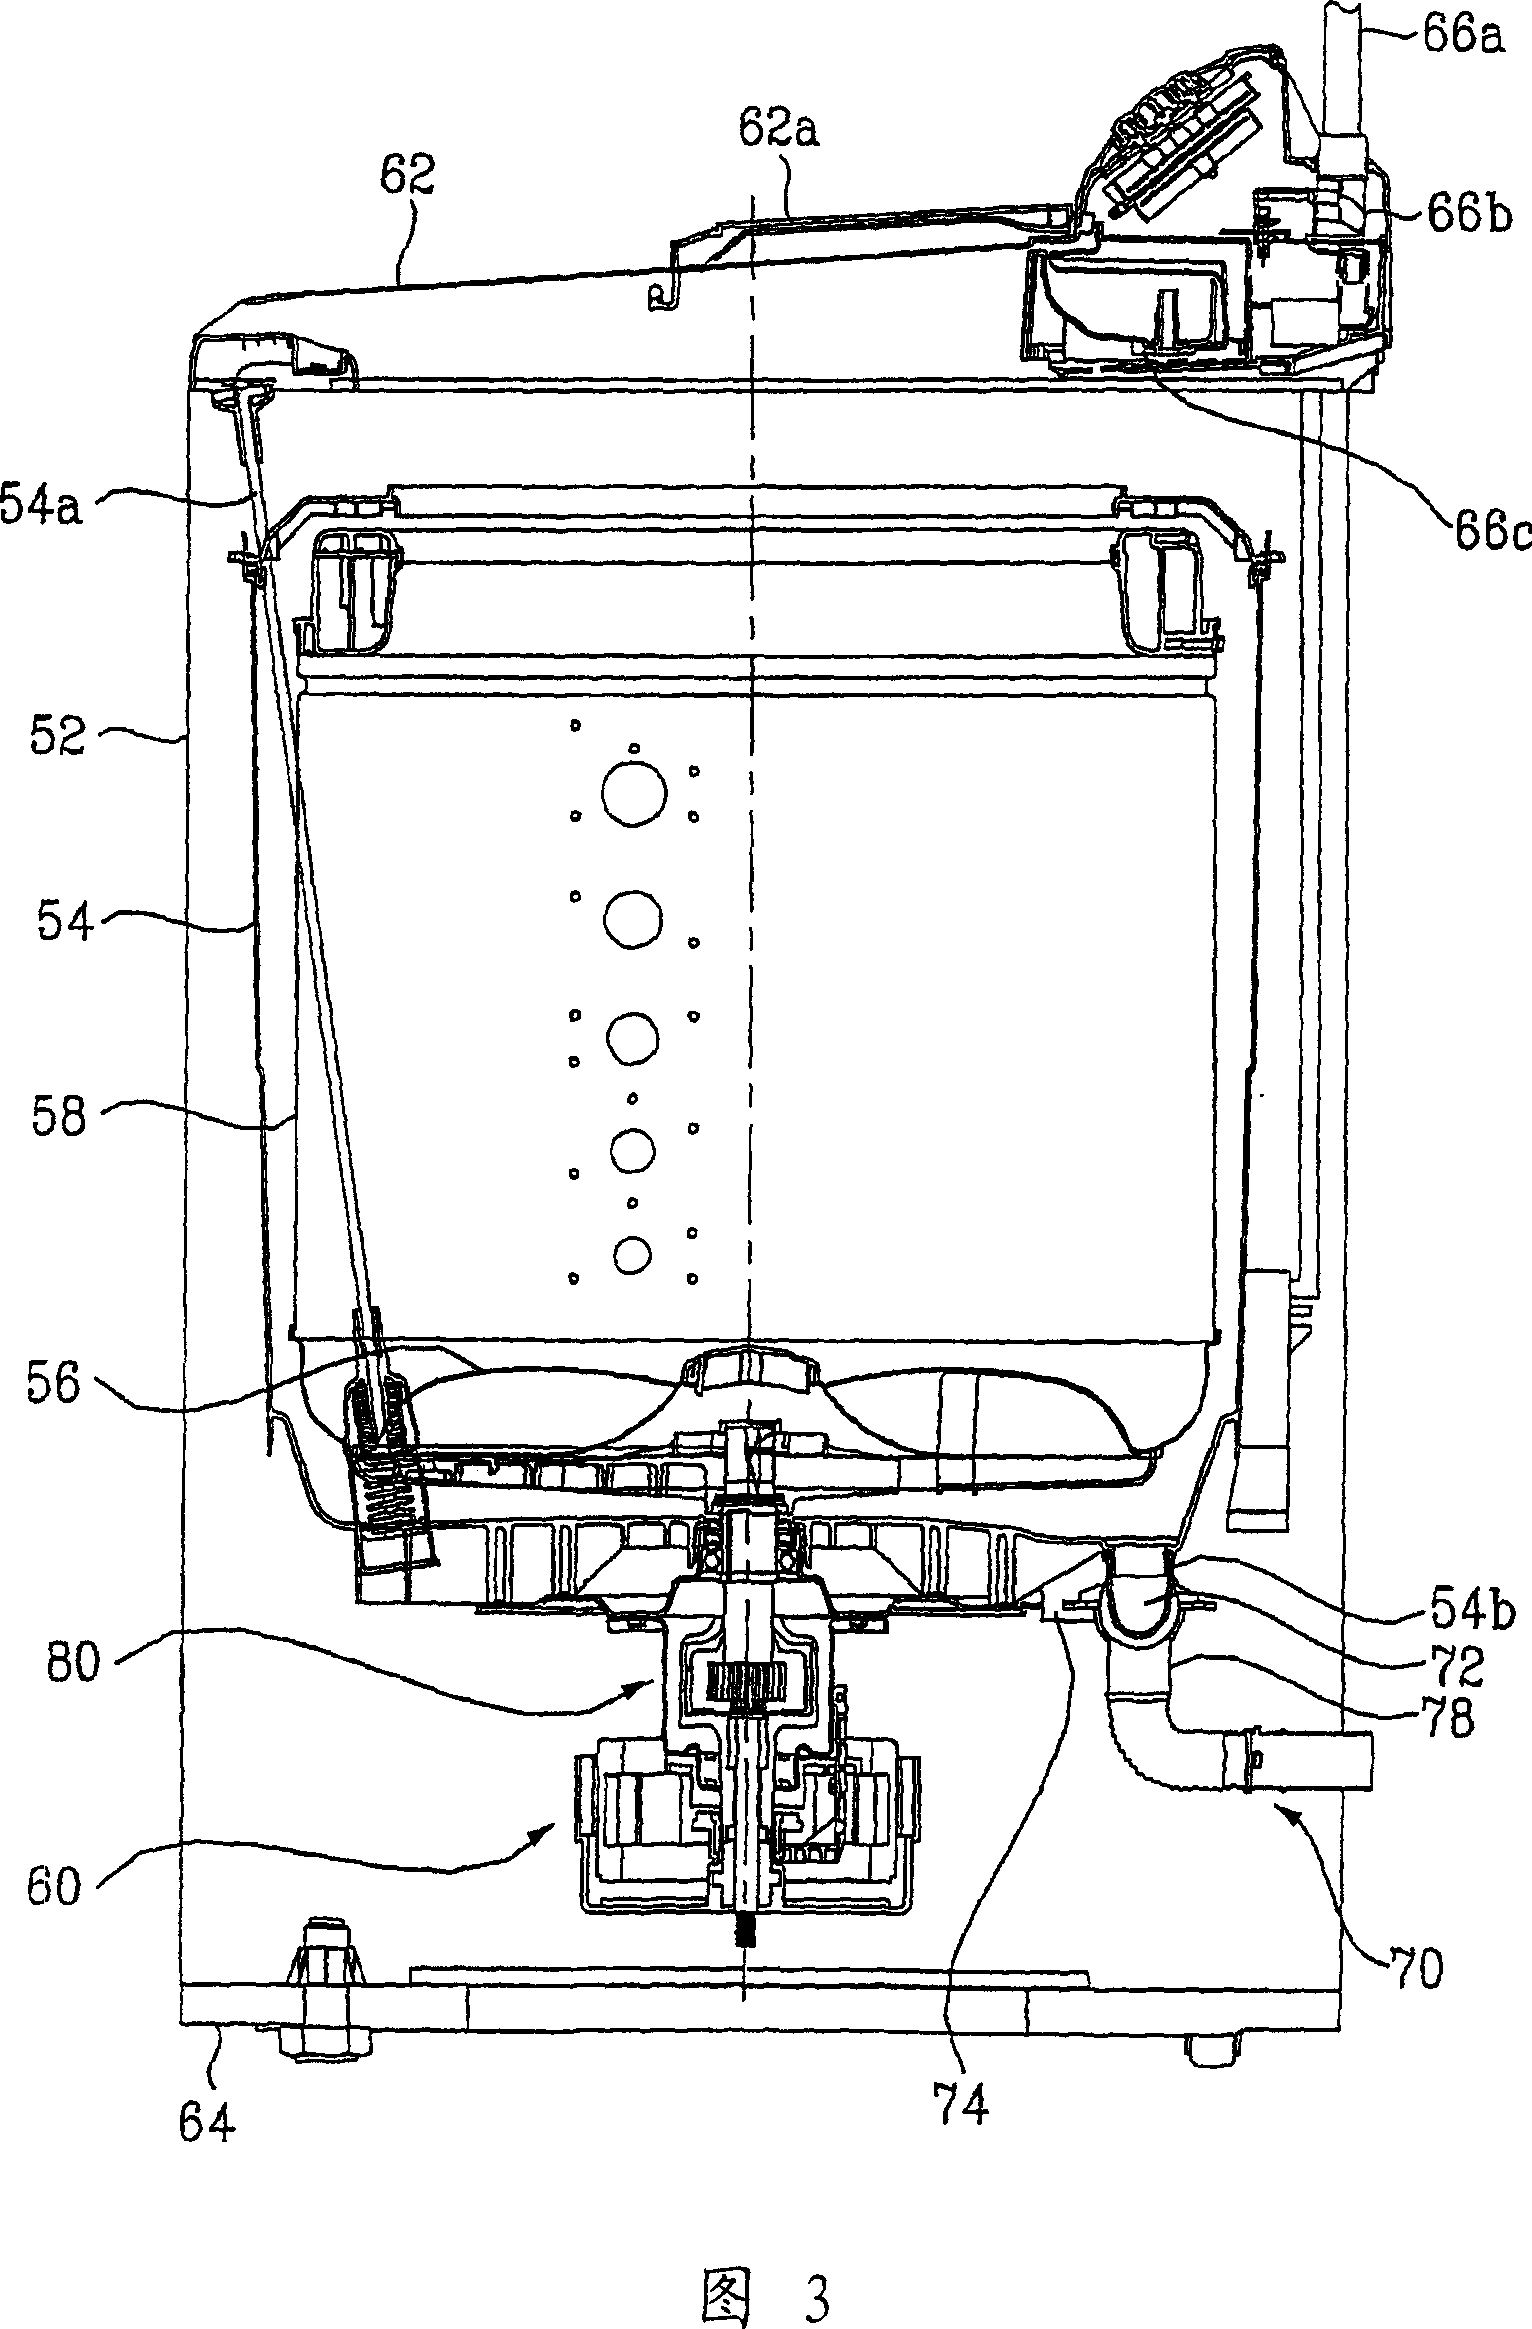 Motor of washing machine